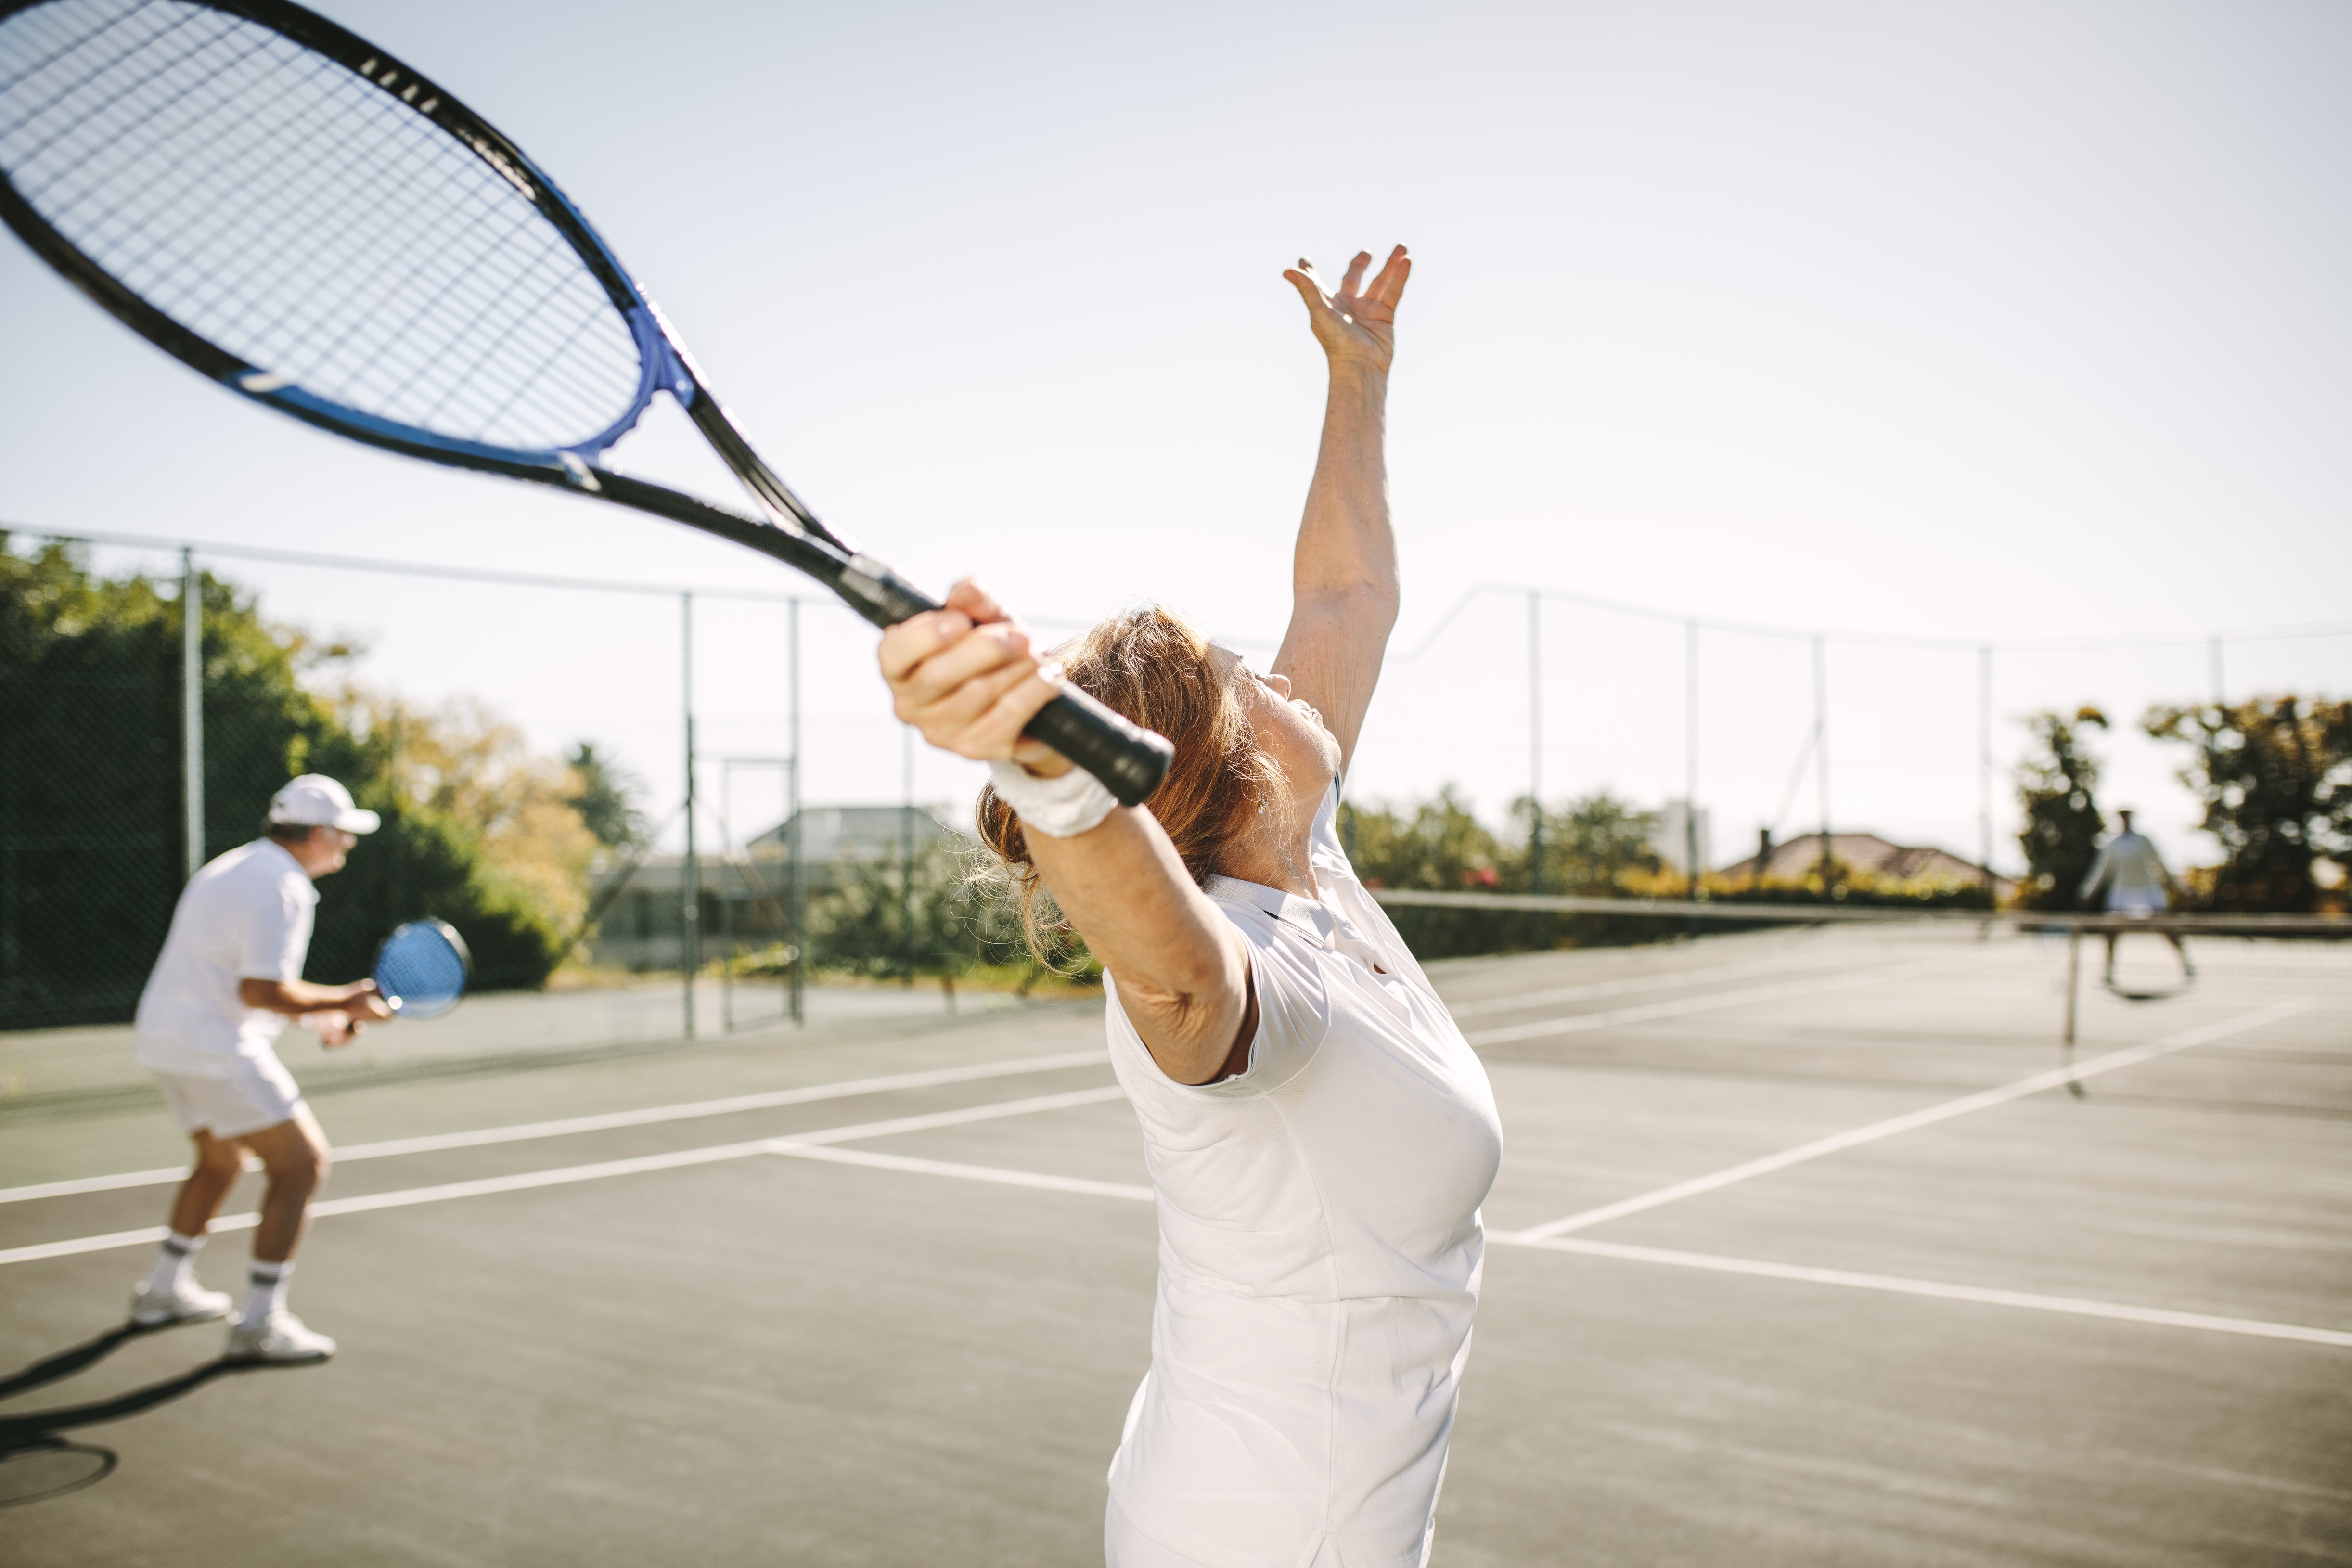 older woman playing tennis